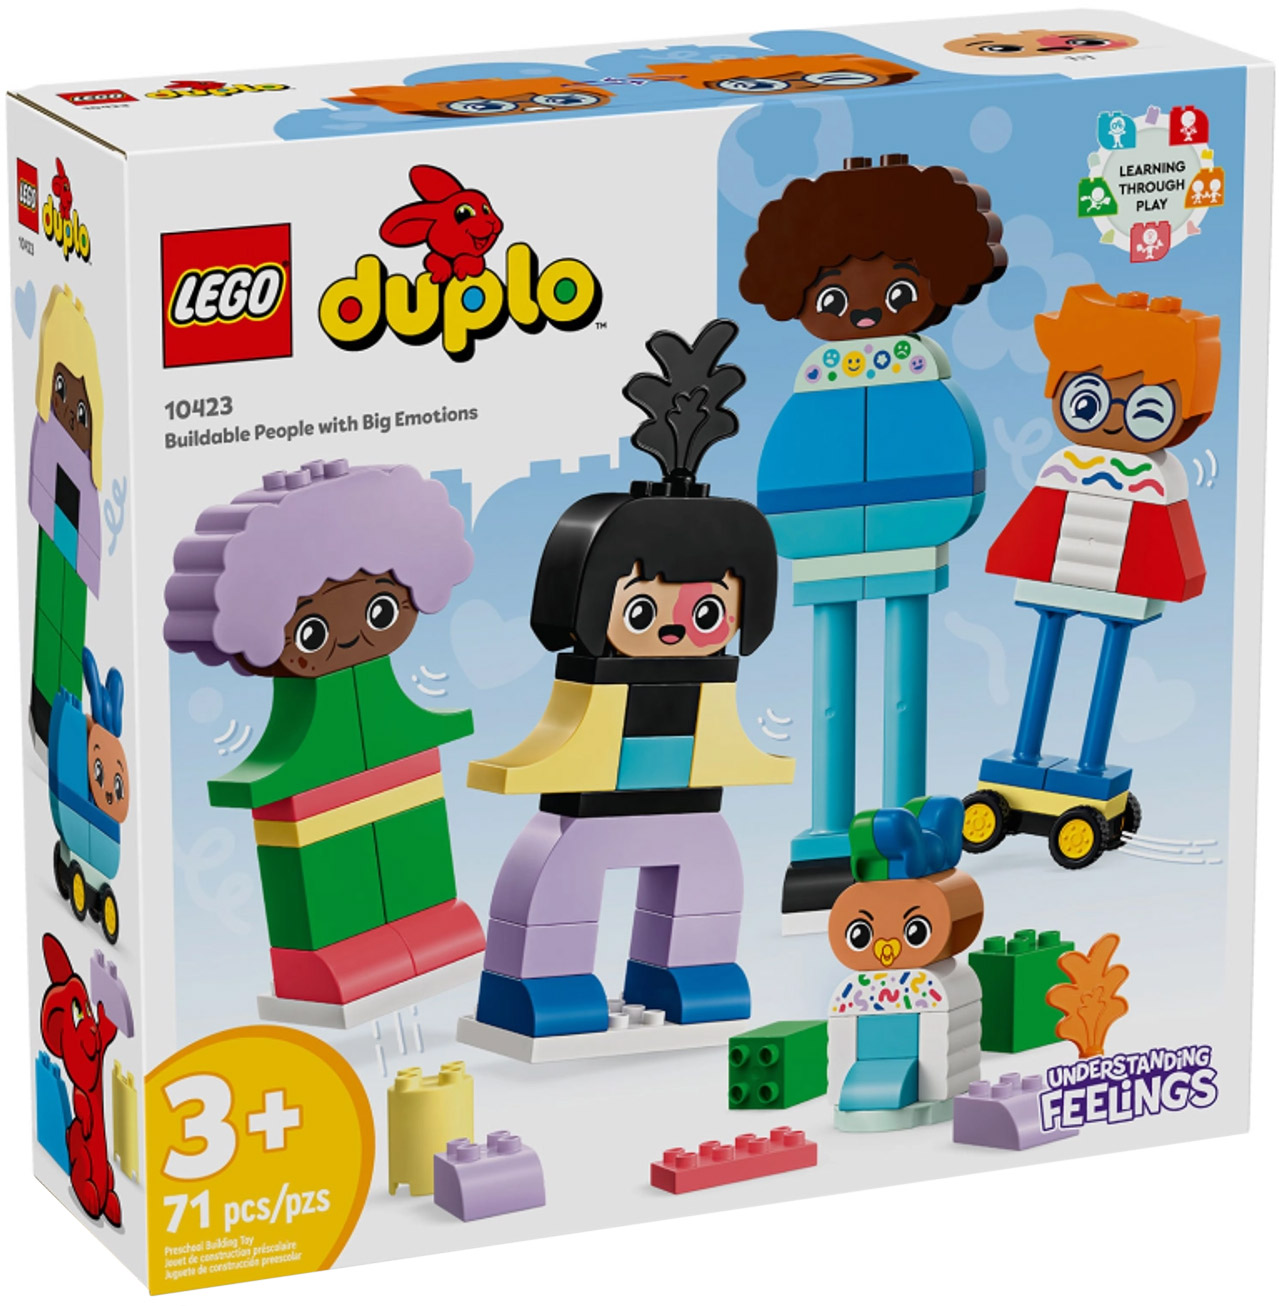 LEGO Duplo 10416 Prendre Soin Des Animaux De La Ferme